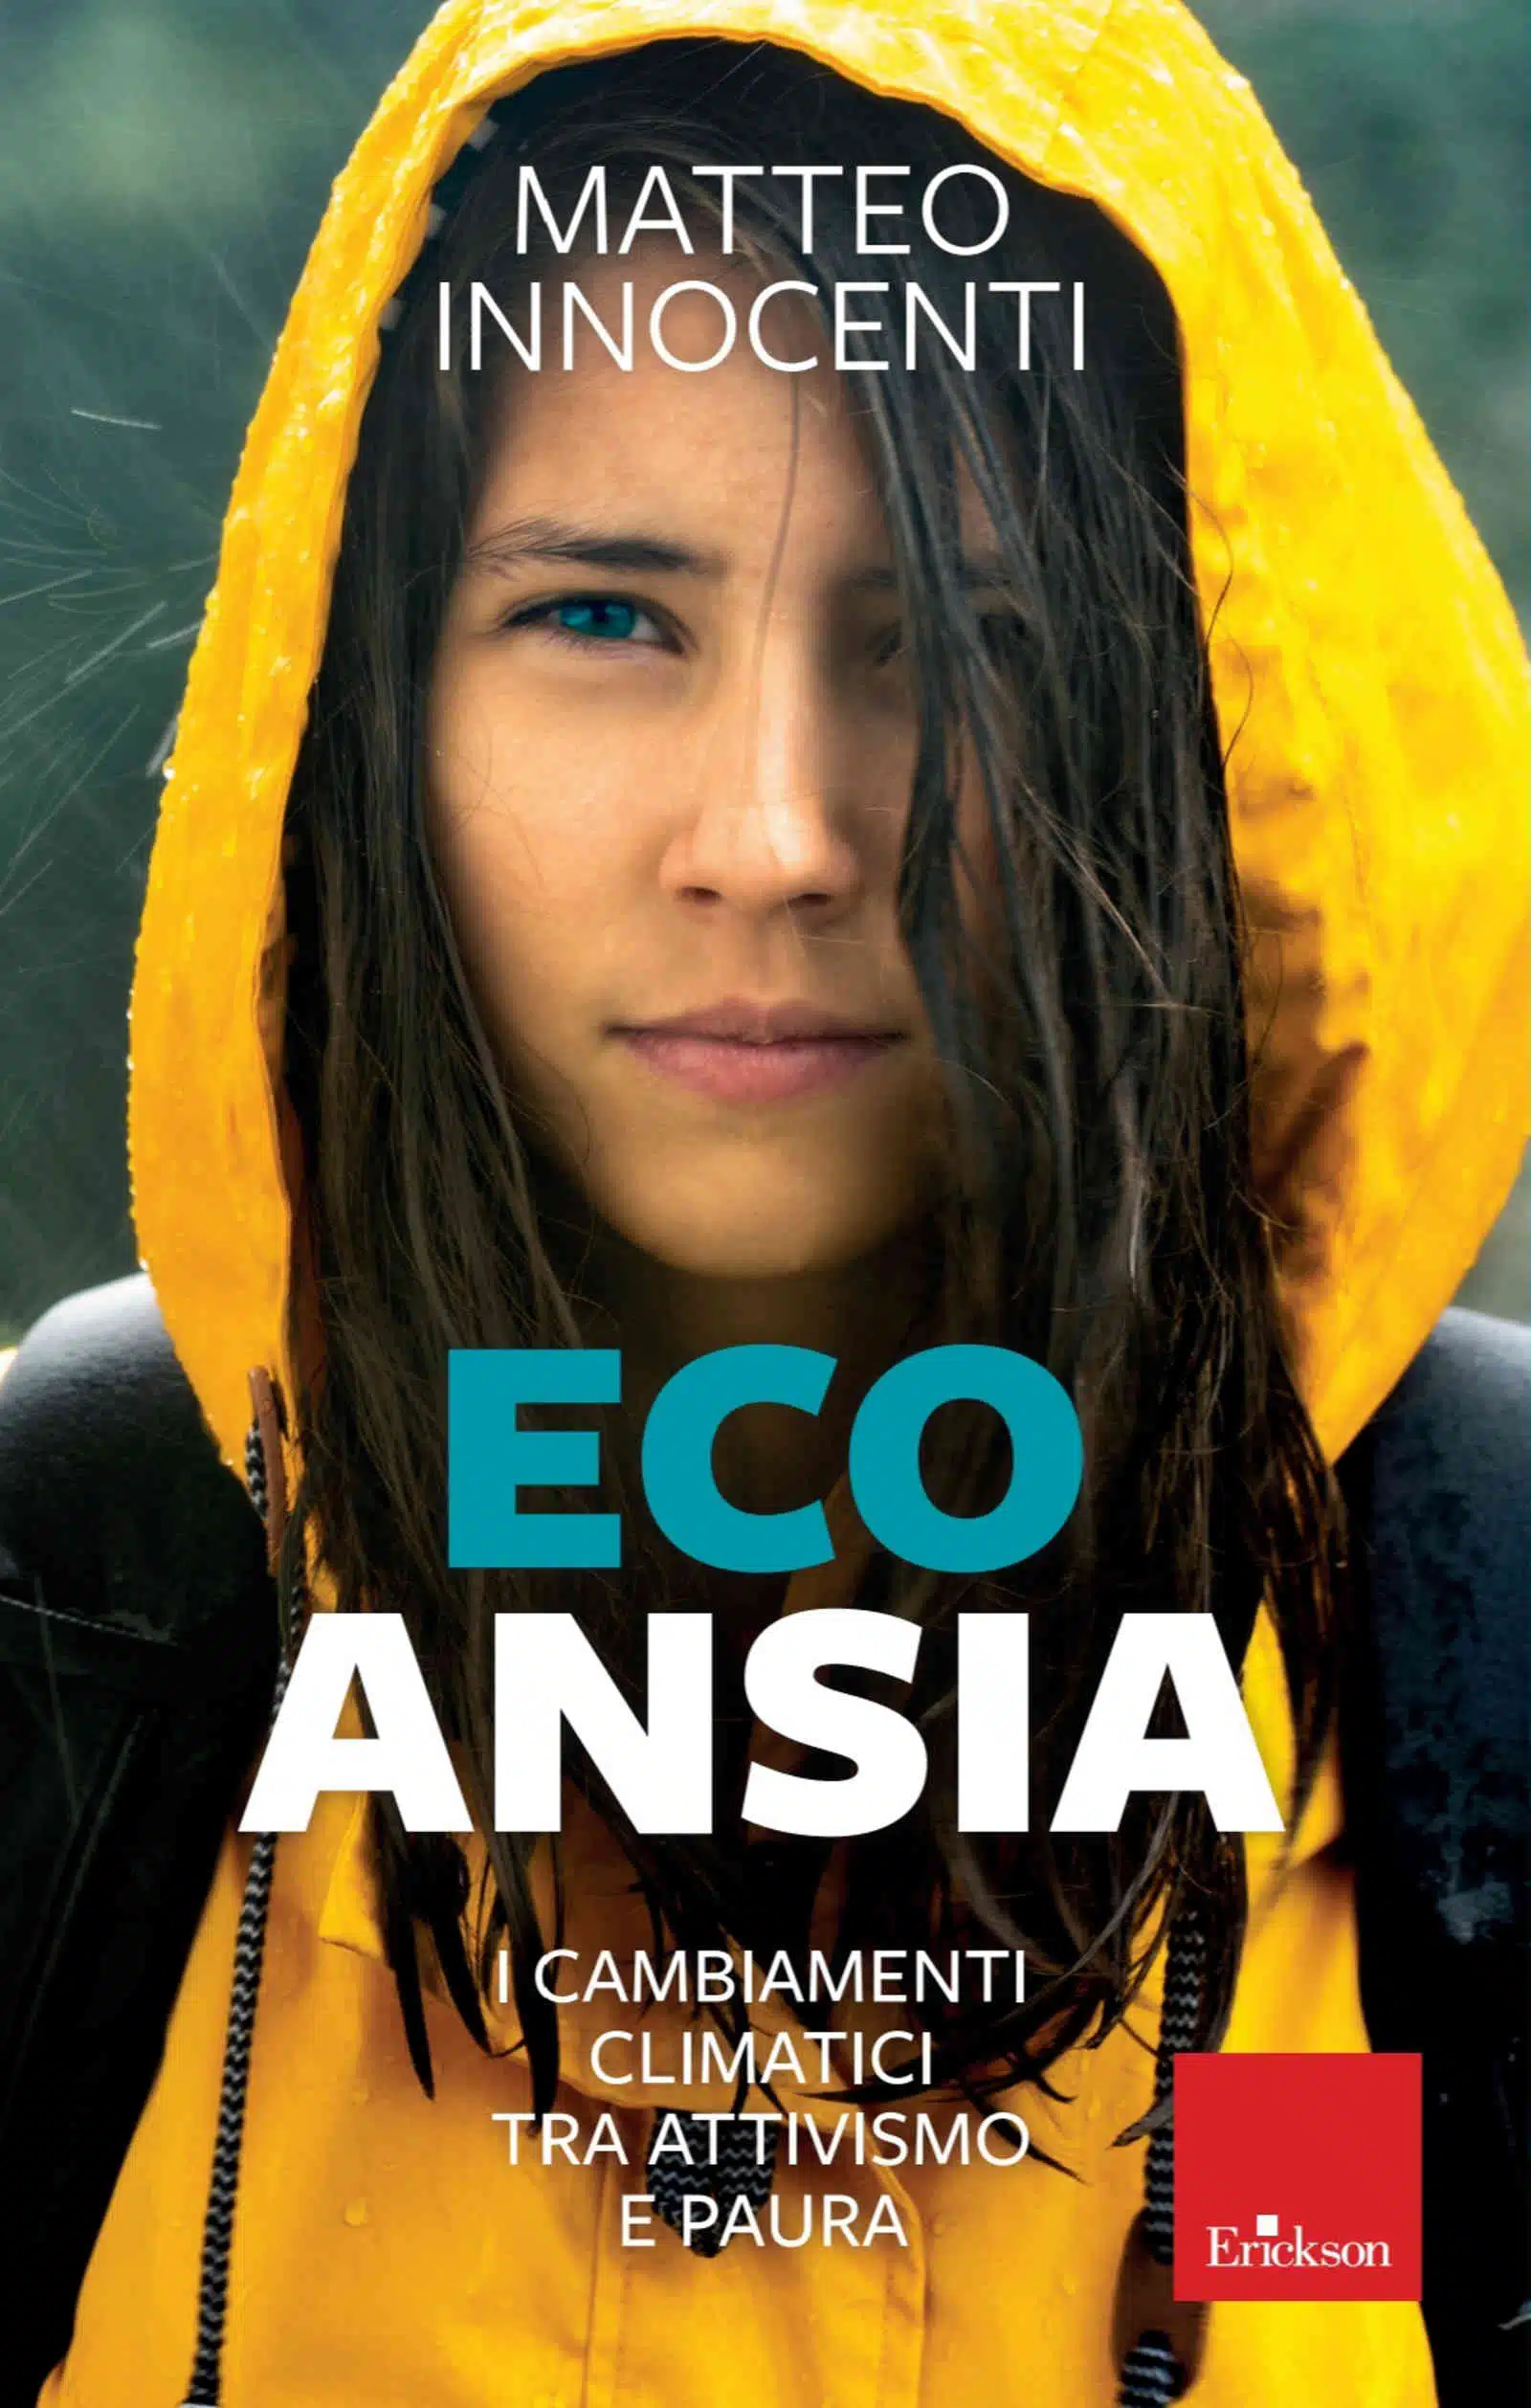 Eco Ansia 2022 di Matteo Innocenti Recensione del libro Featured